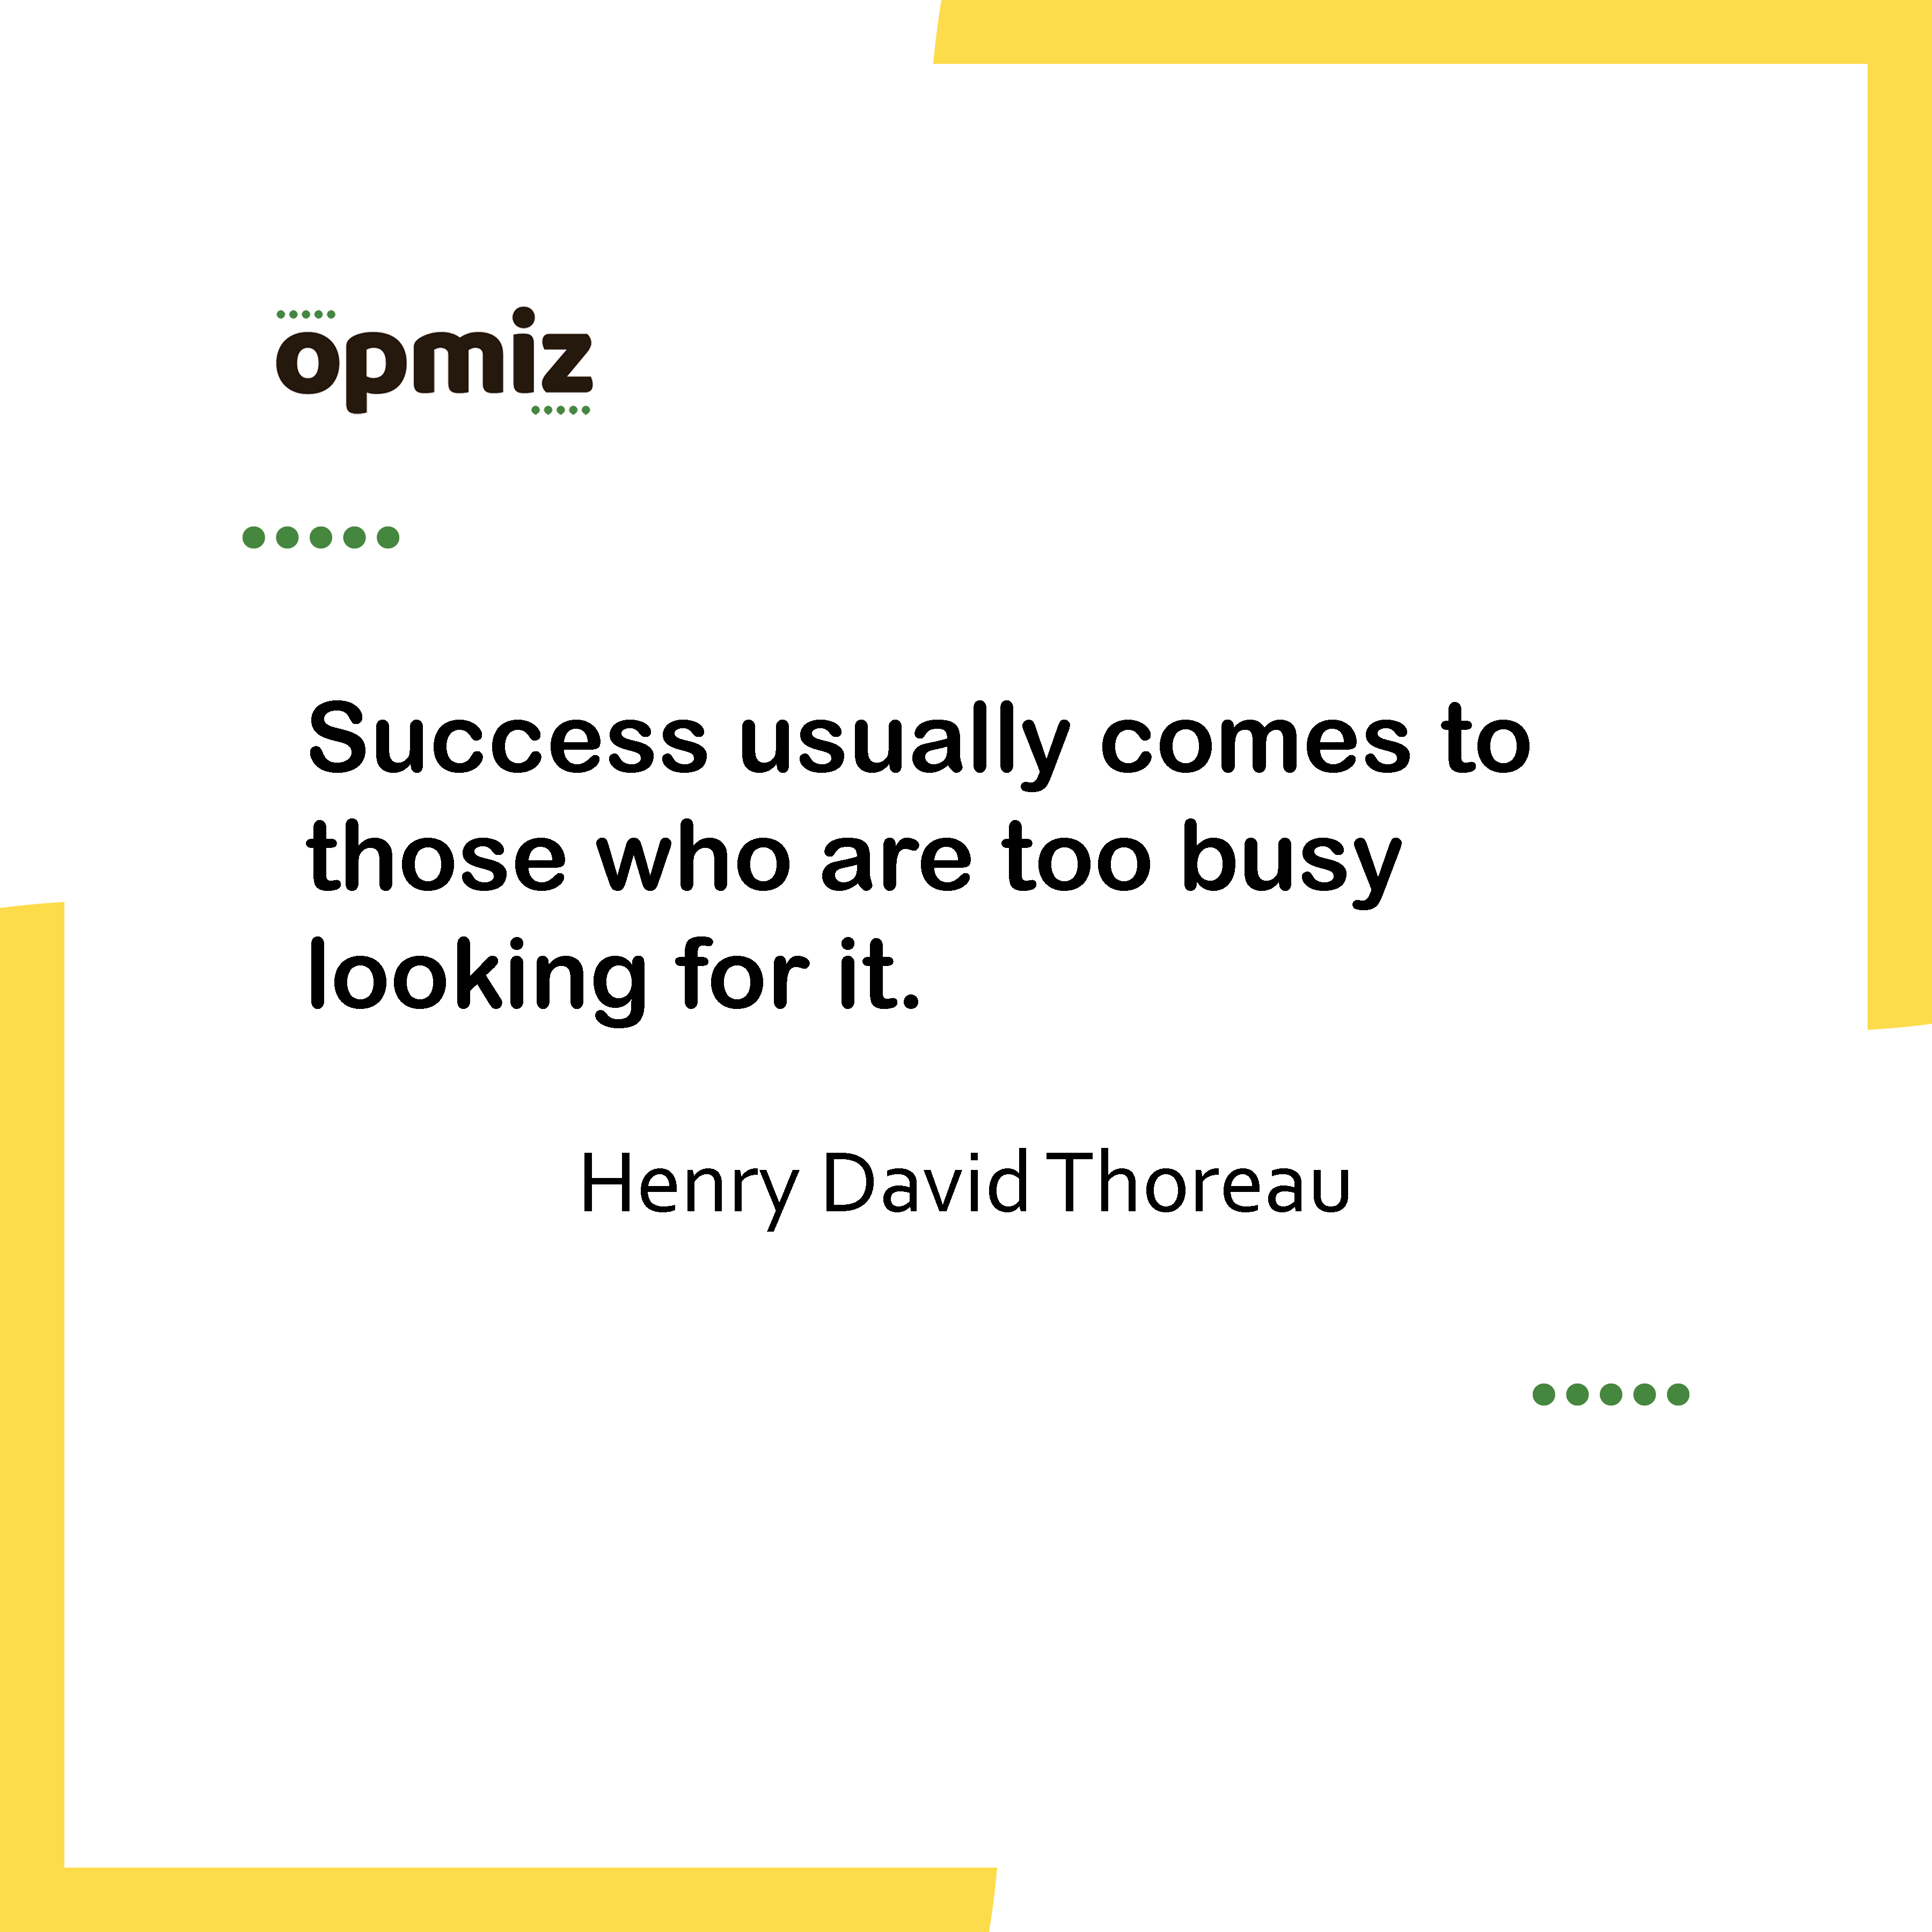 Inspirational Quotes Henry David Thoreau - opmiz.com